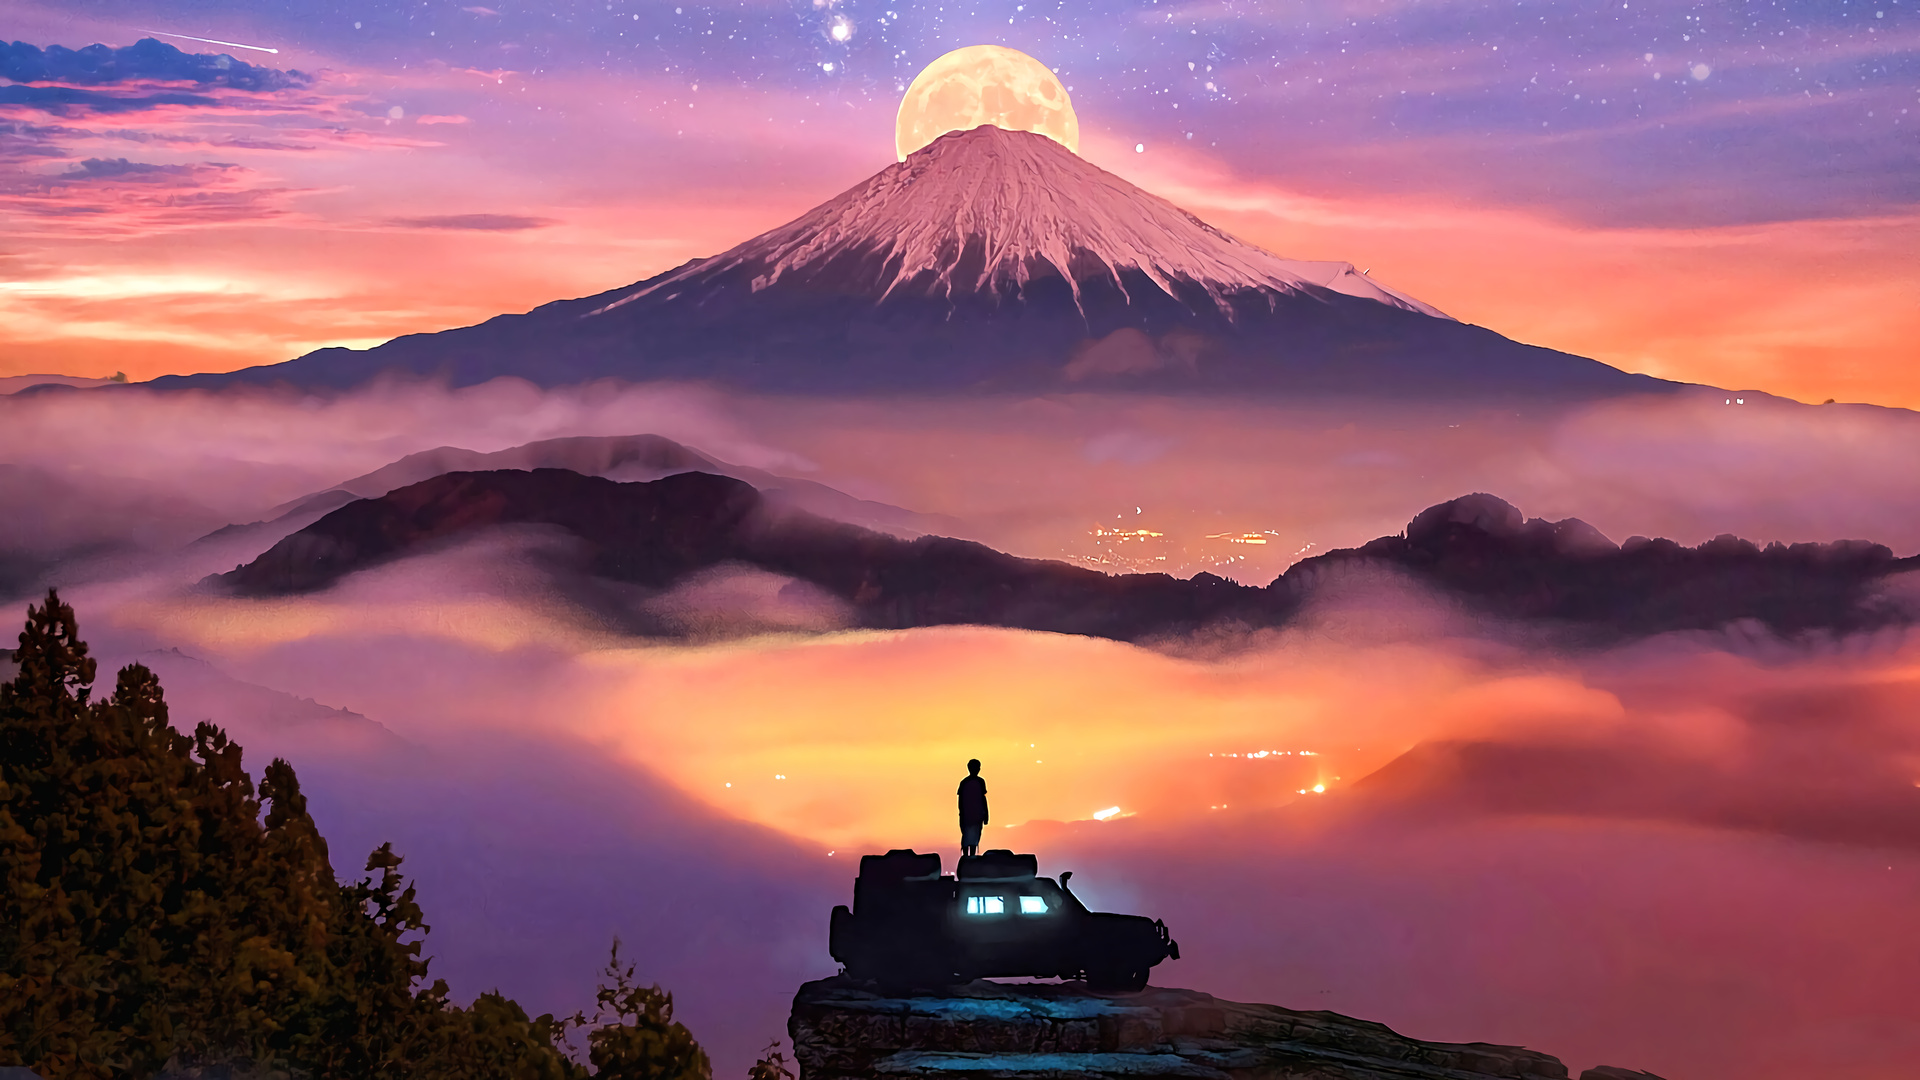 General 1920x1080 artwork digital art stars Mount Fuji Moon clouds neon mist